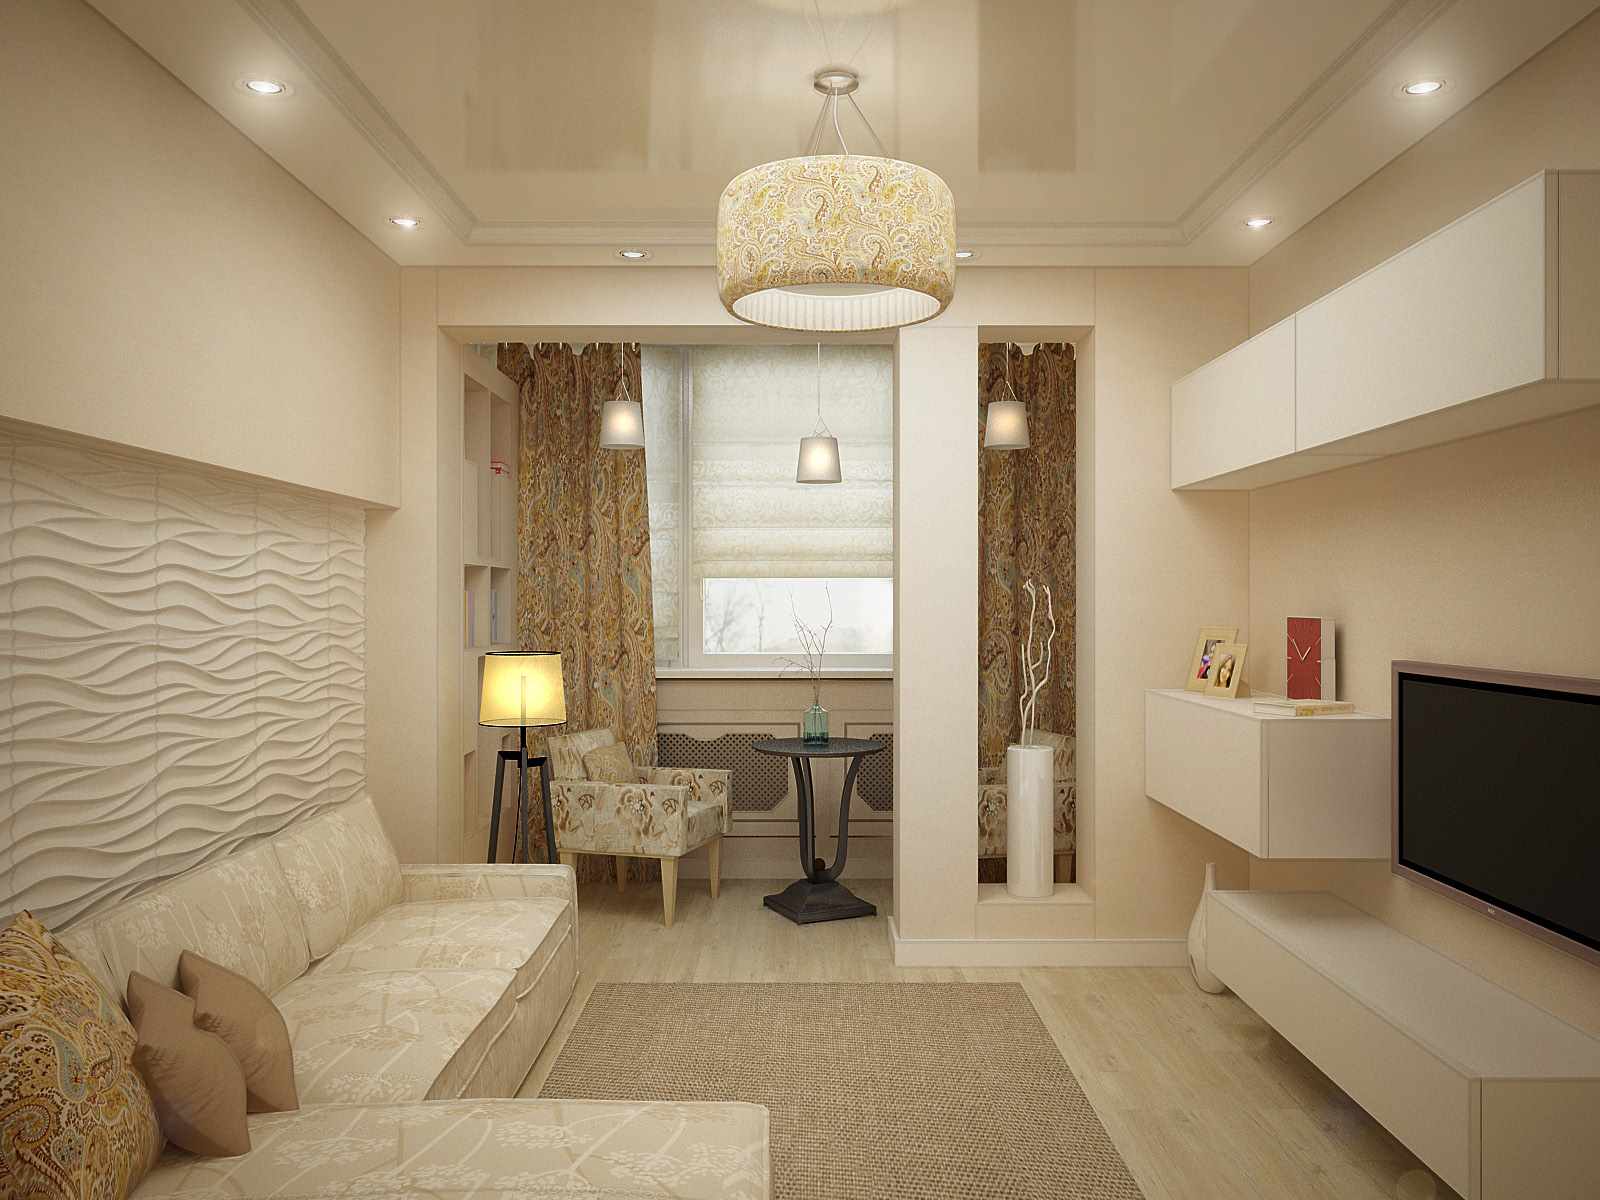 La idea de un diseño brillante de una sala de estar de 17 m2.